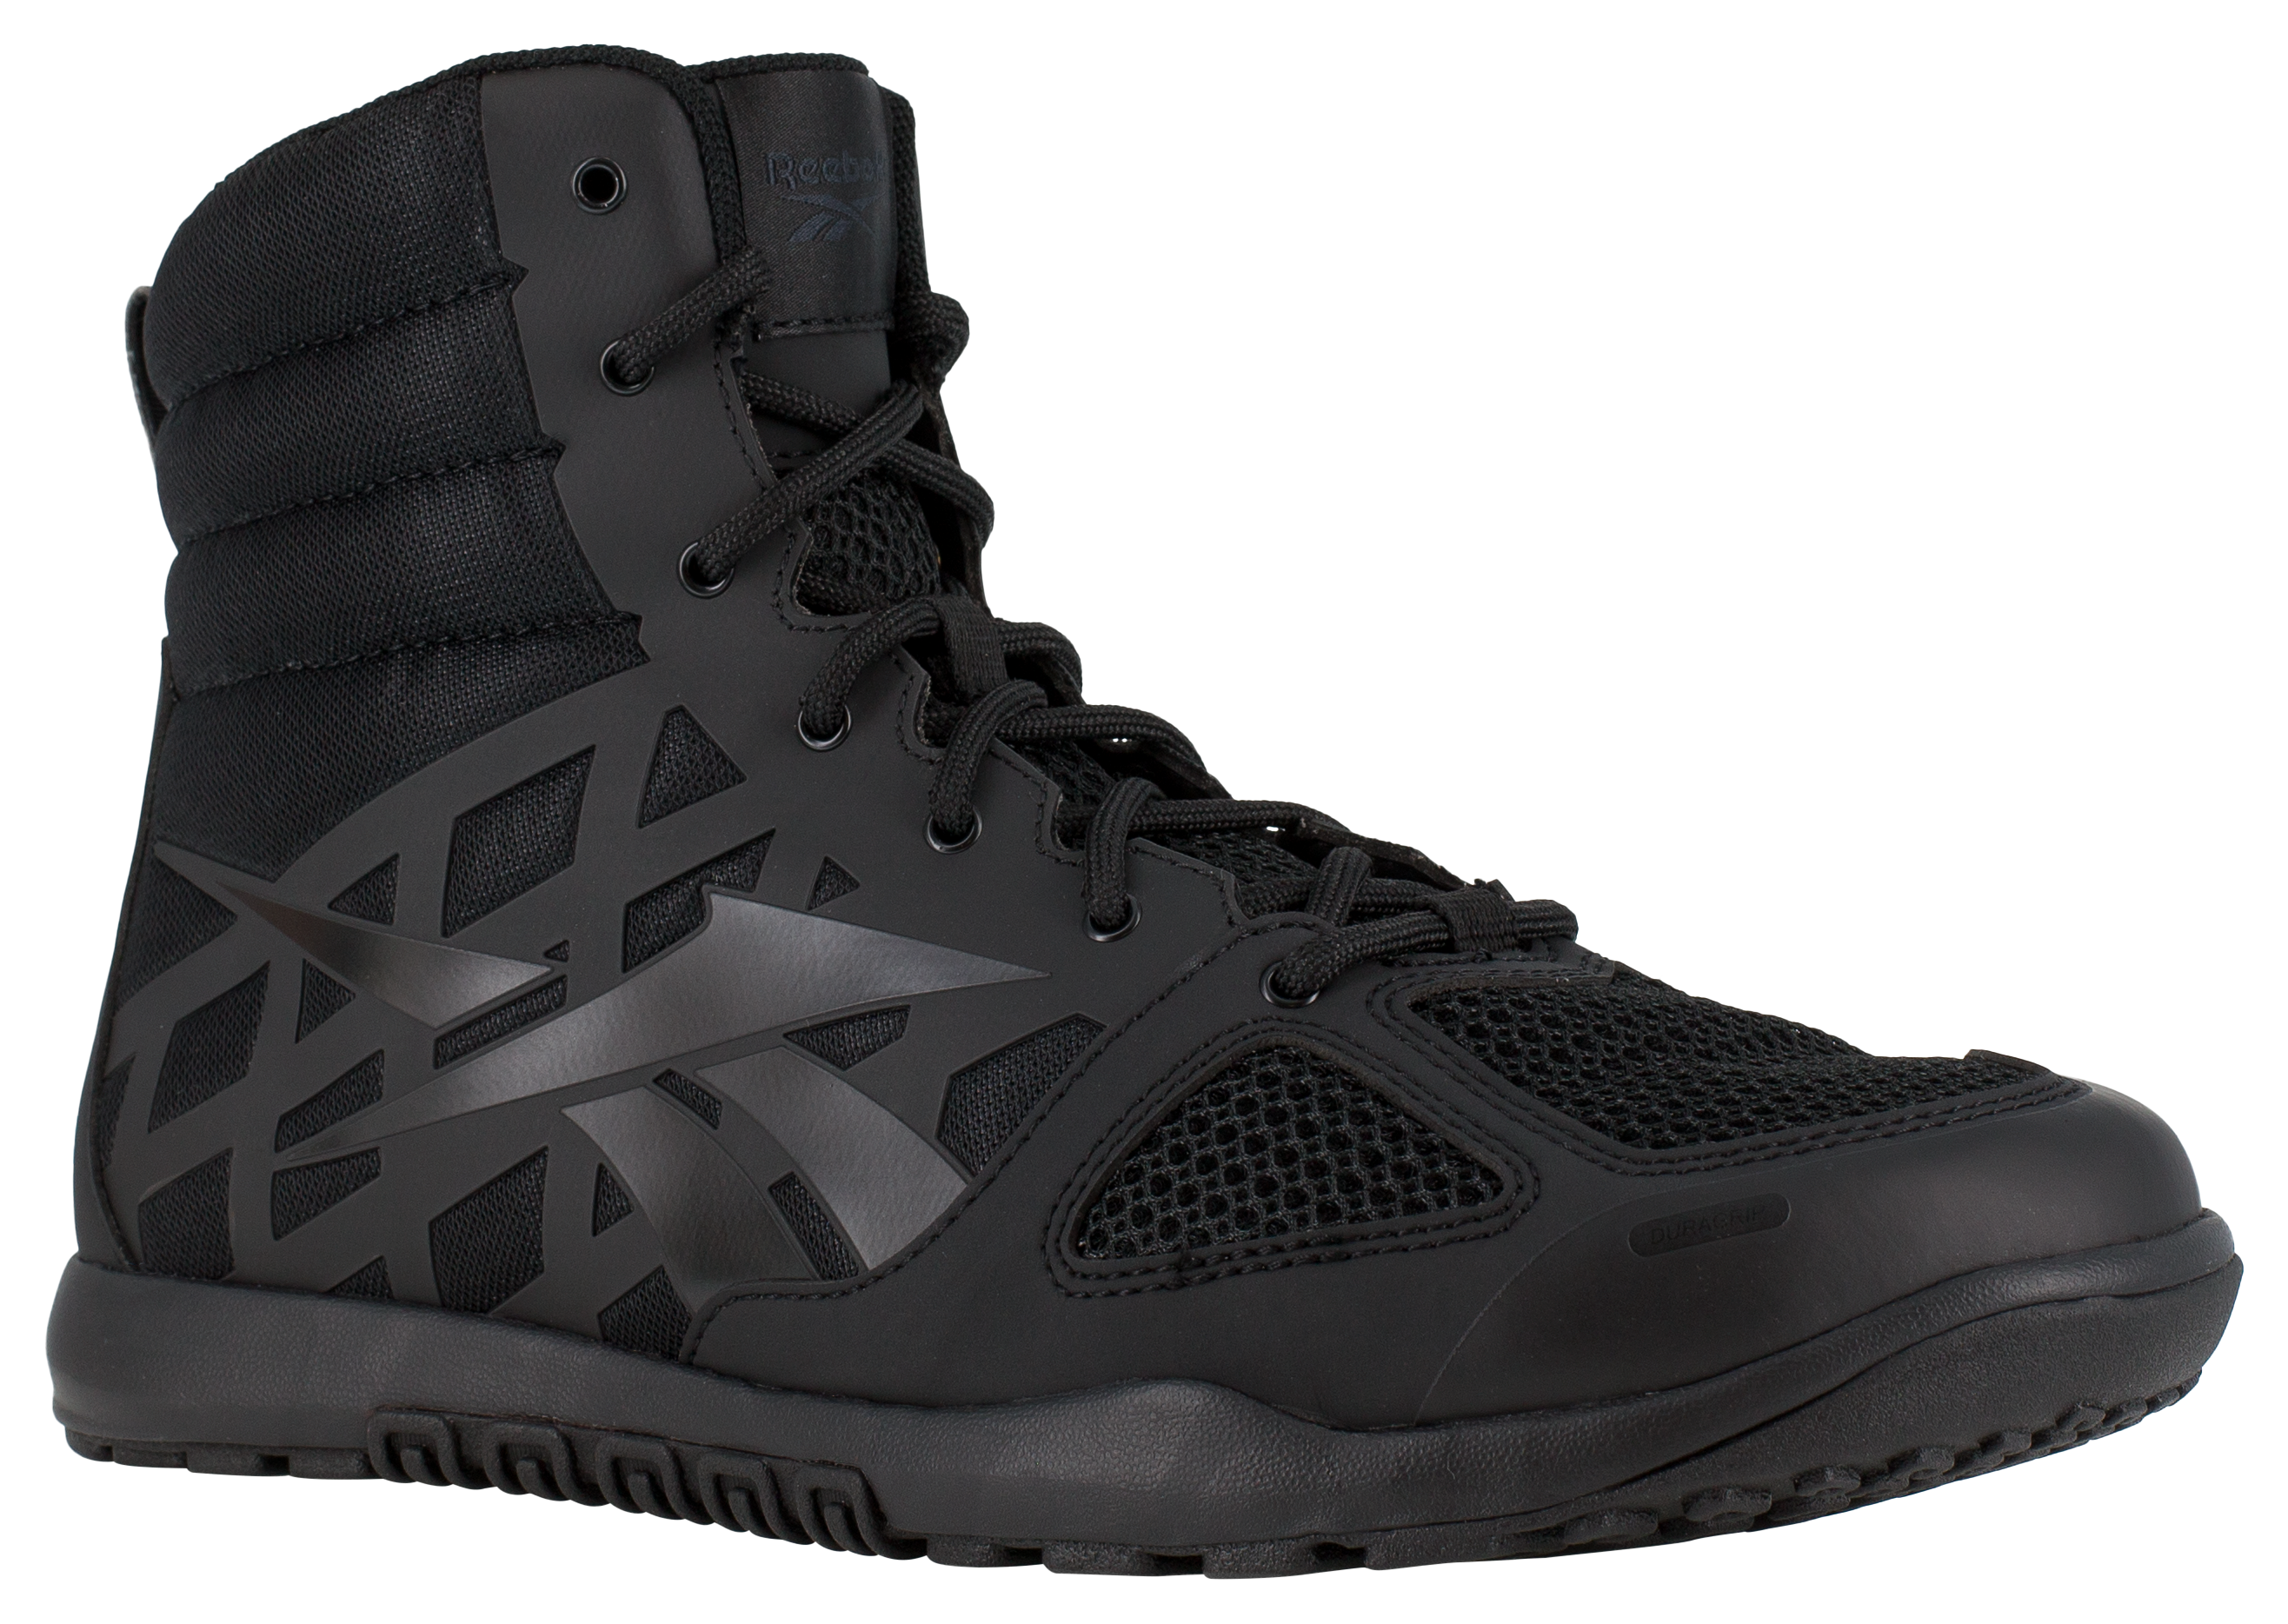 Reebok Nano Tactical 6″ Tactical Boots for Men - Black - 9.5W